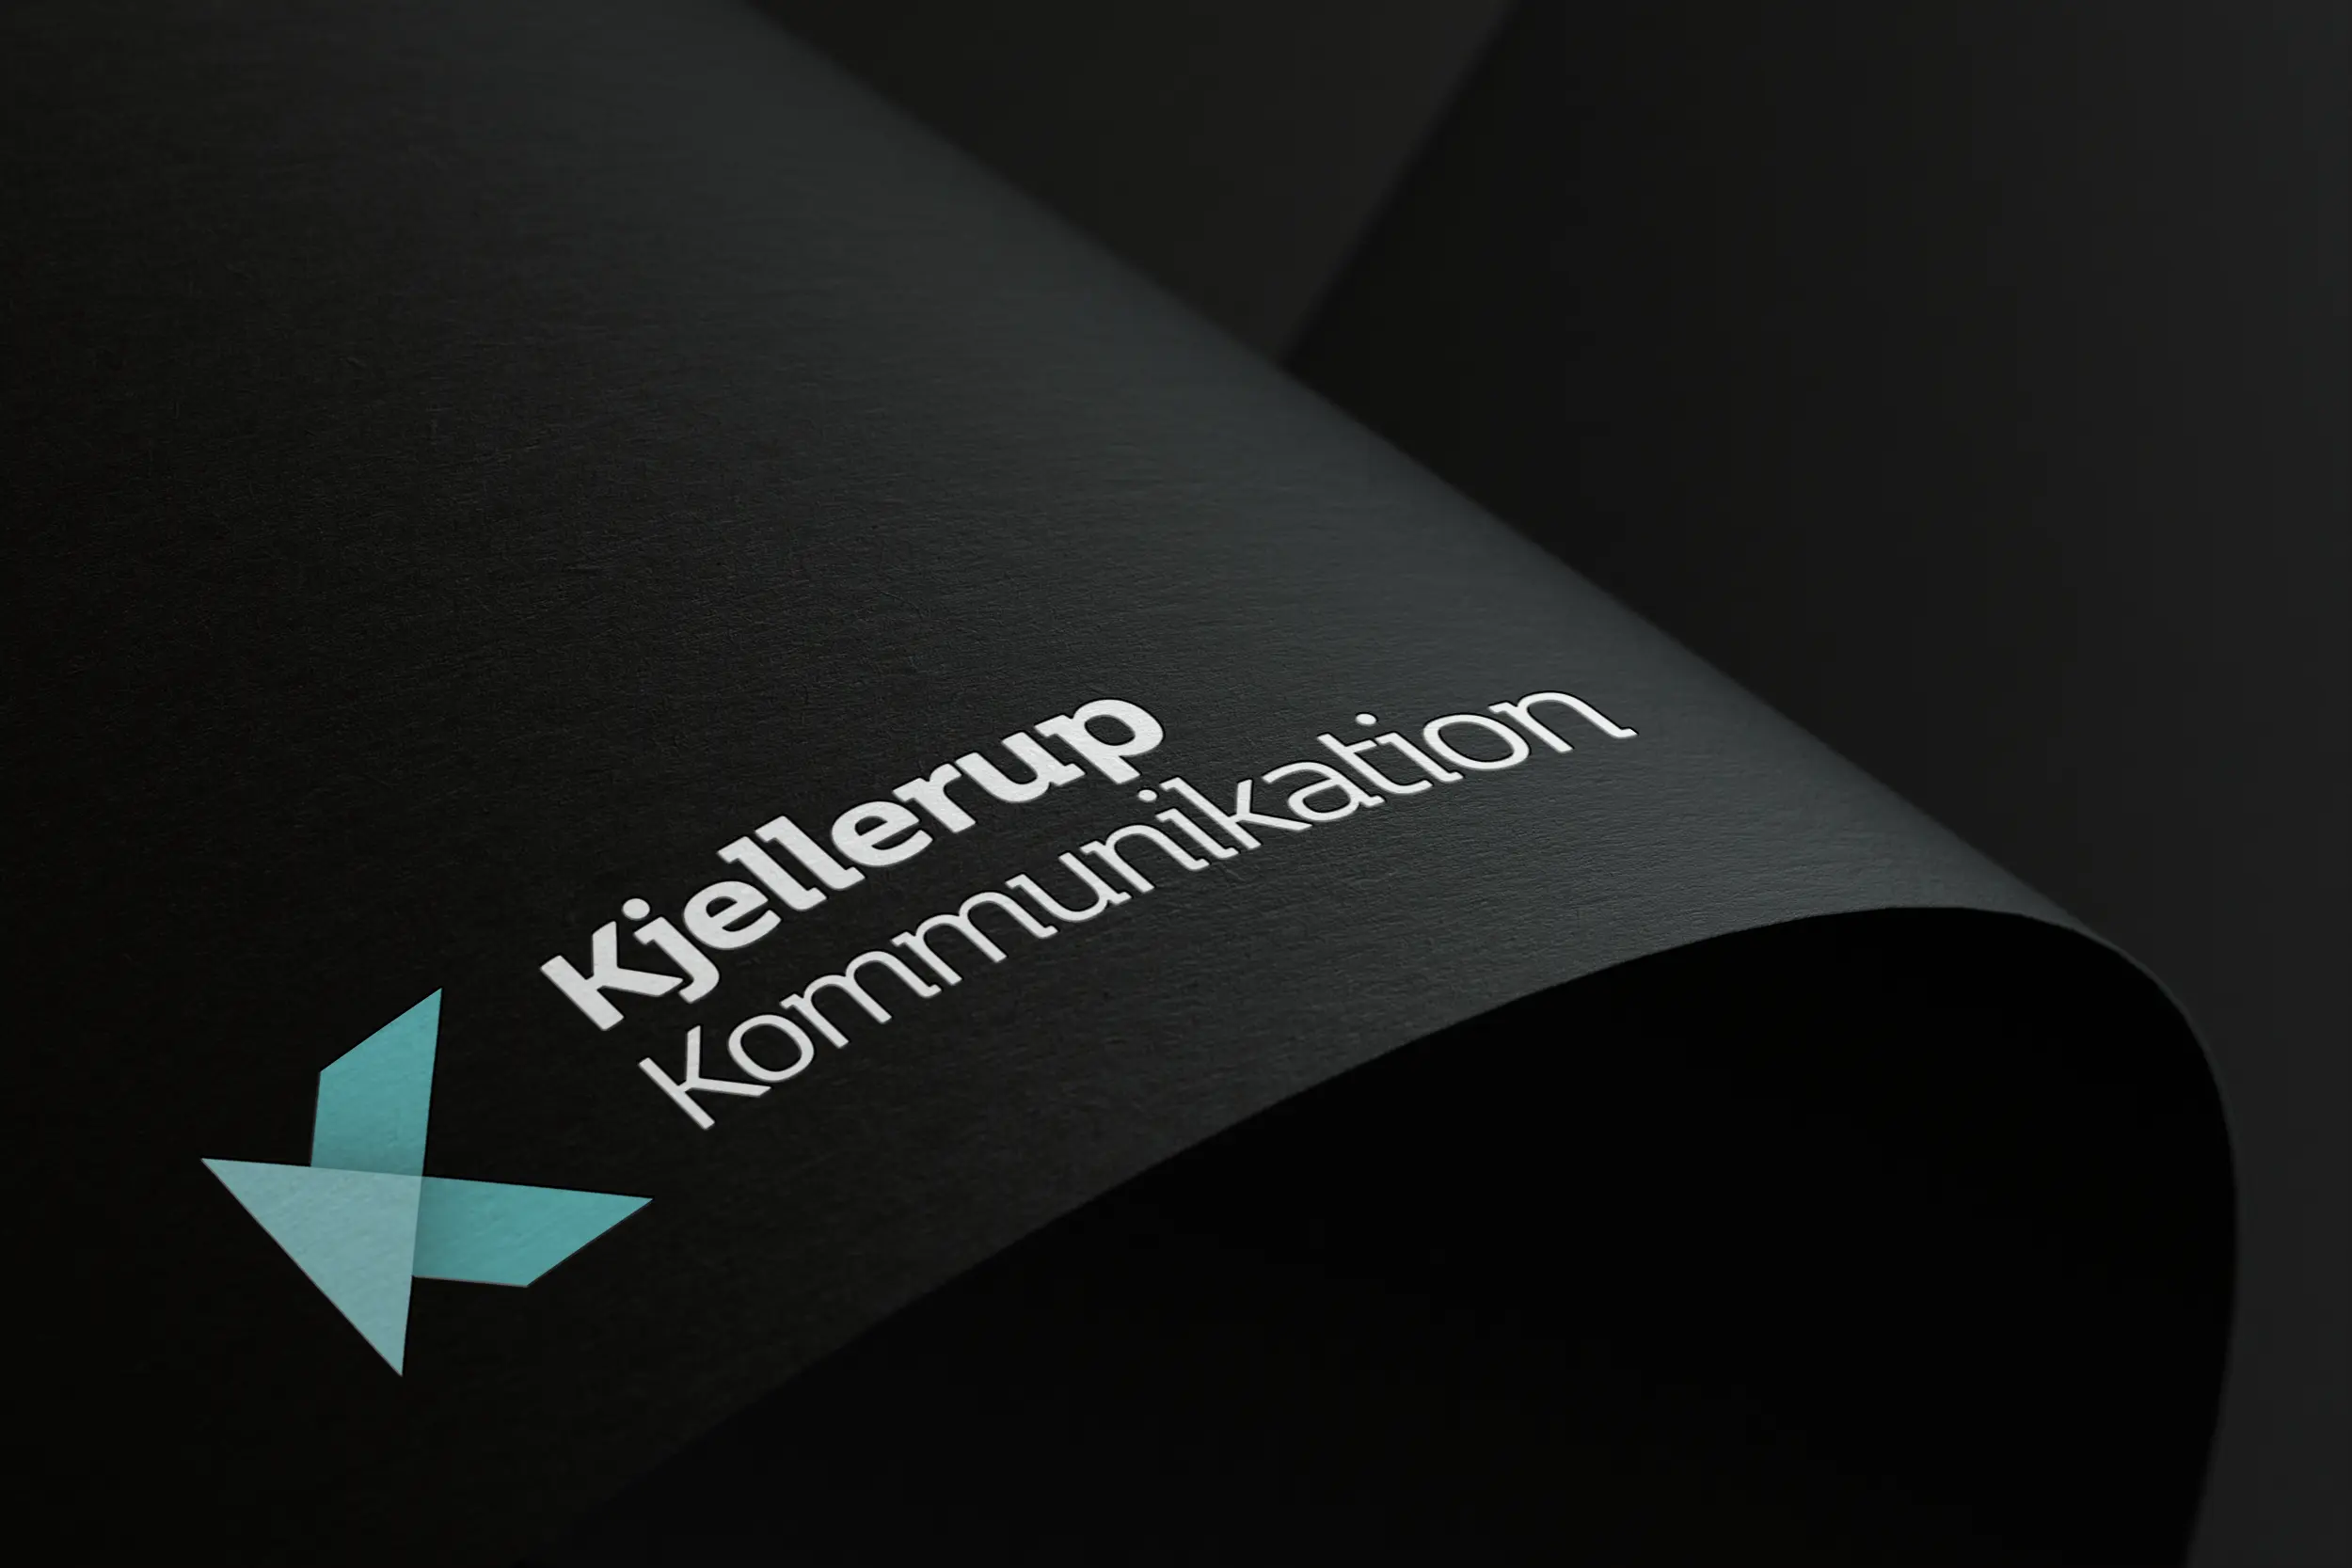 Firmalogo designet til Kjellerup kommunikation